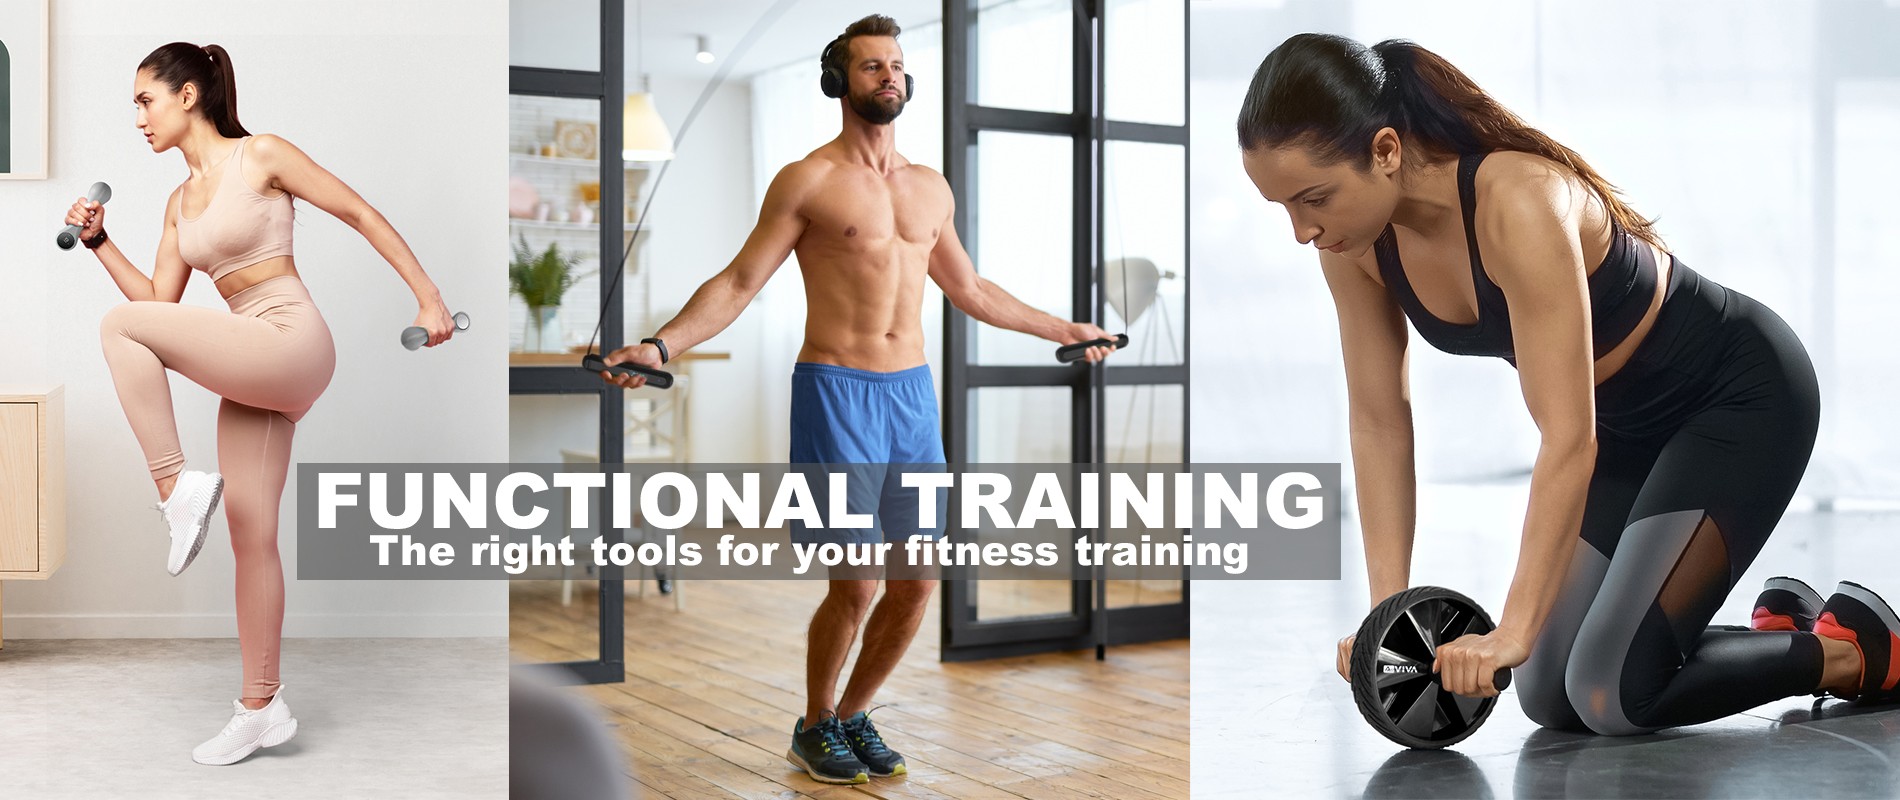 AsVIVA Functional training - Einfach zu hause trainieren